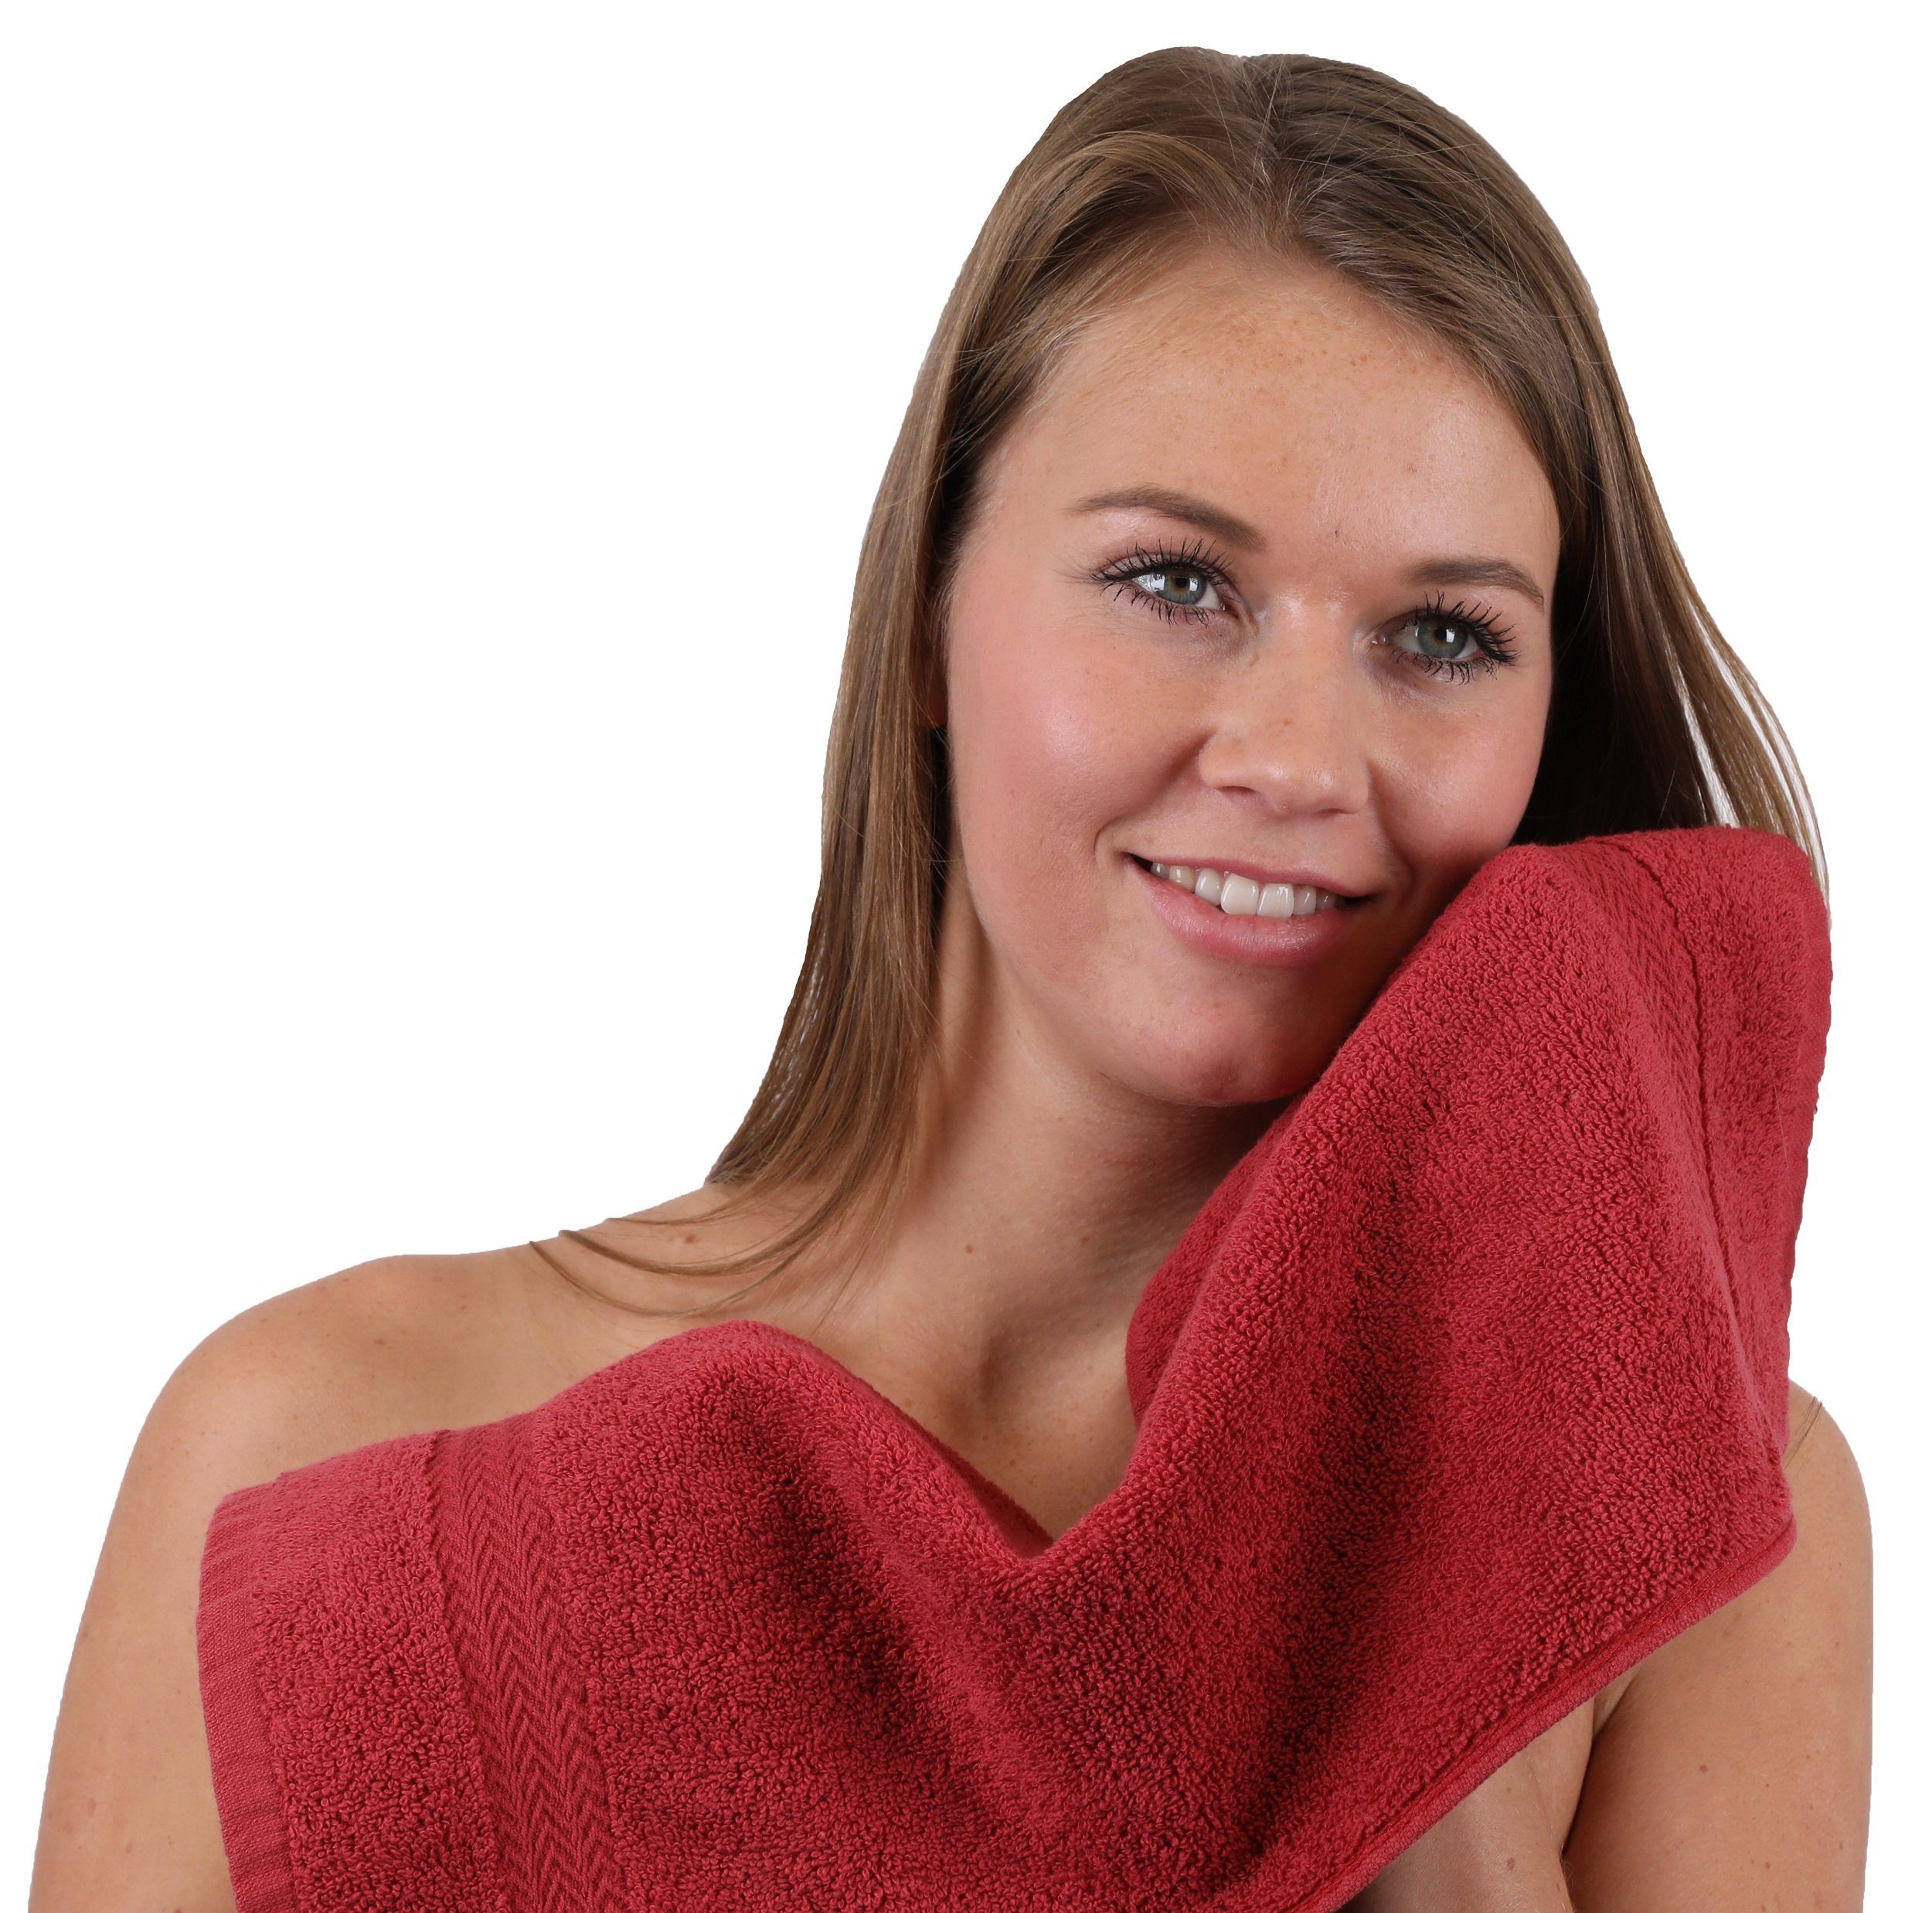 dunkelrot, Classic Handtuch Set Farbe 10-TLG. 100% altrosa Baumwolle Betz und Handtuch-Set